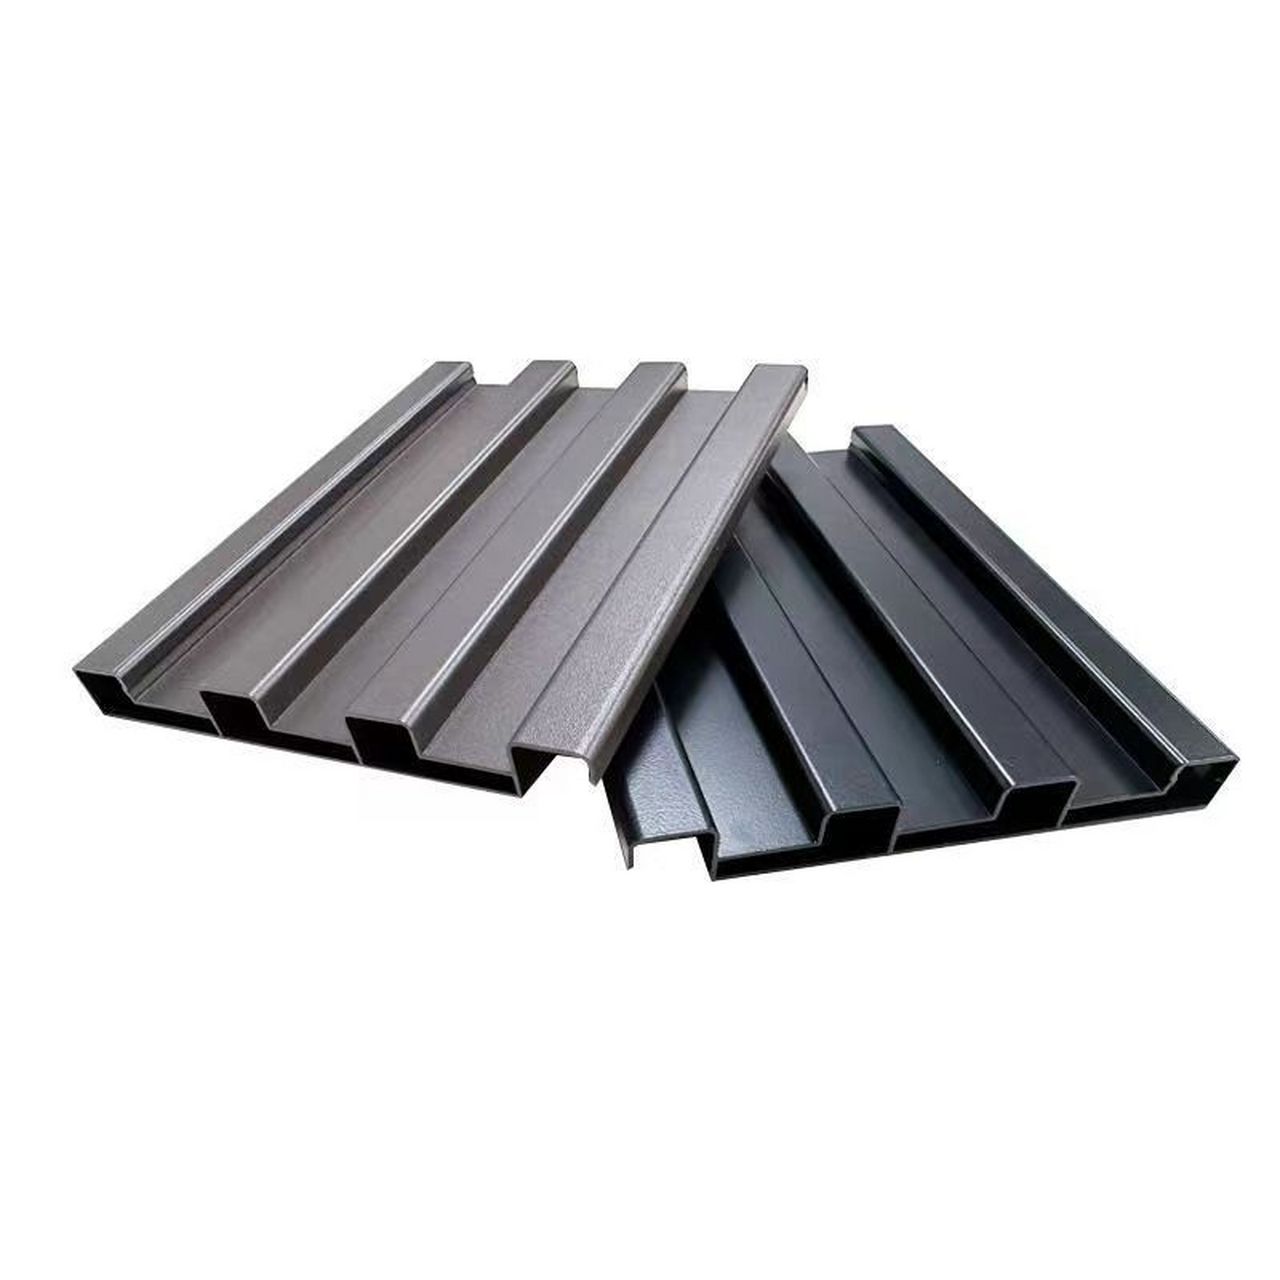 铝合金铝瓦隔热保温为屋顶提供舒适居住环境 随着人们对居住环境要求